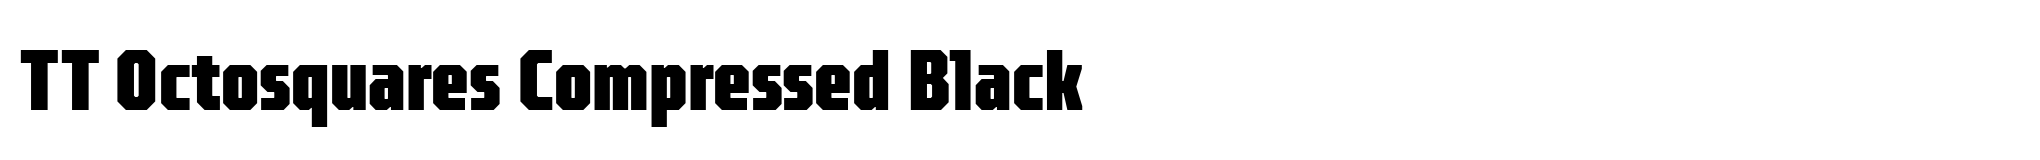 TT Octosquares Compressed Black image